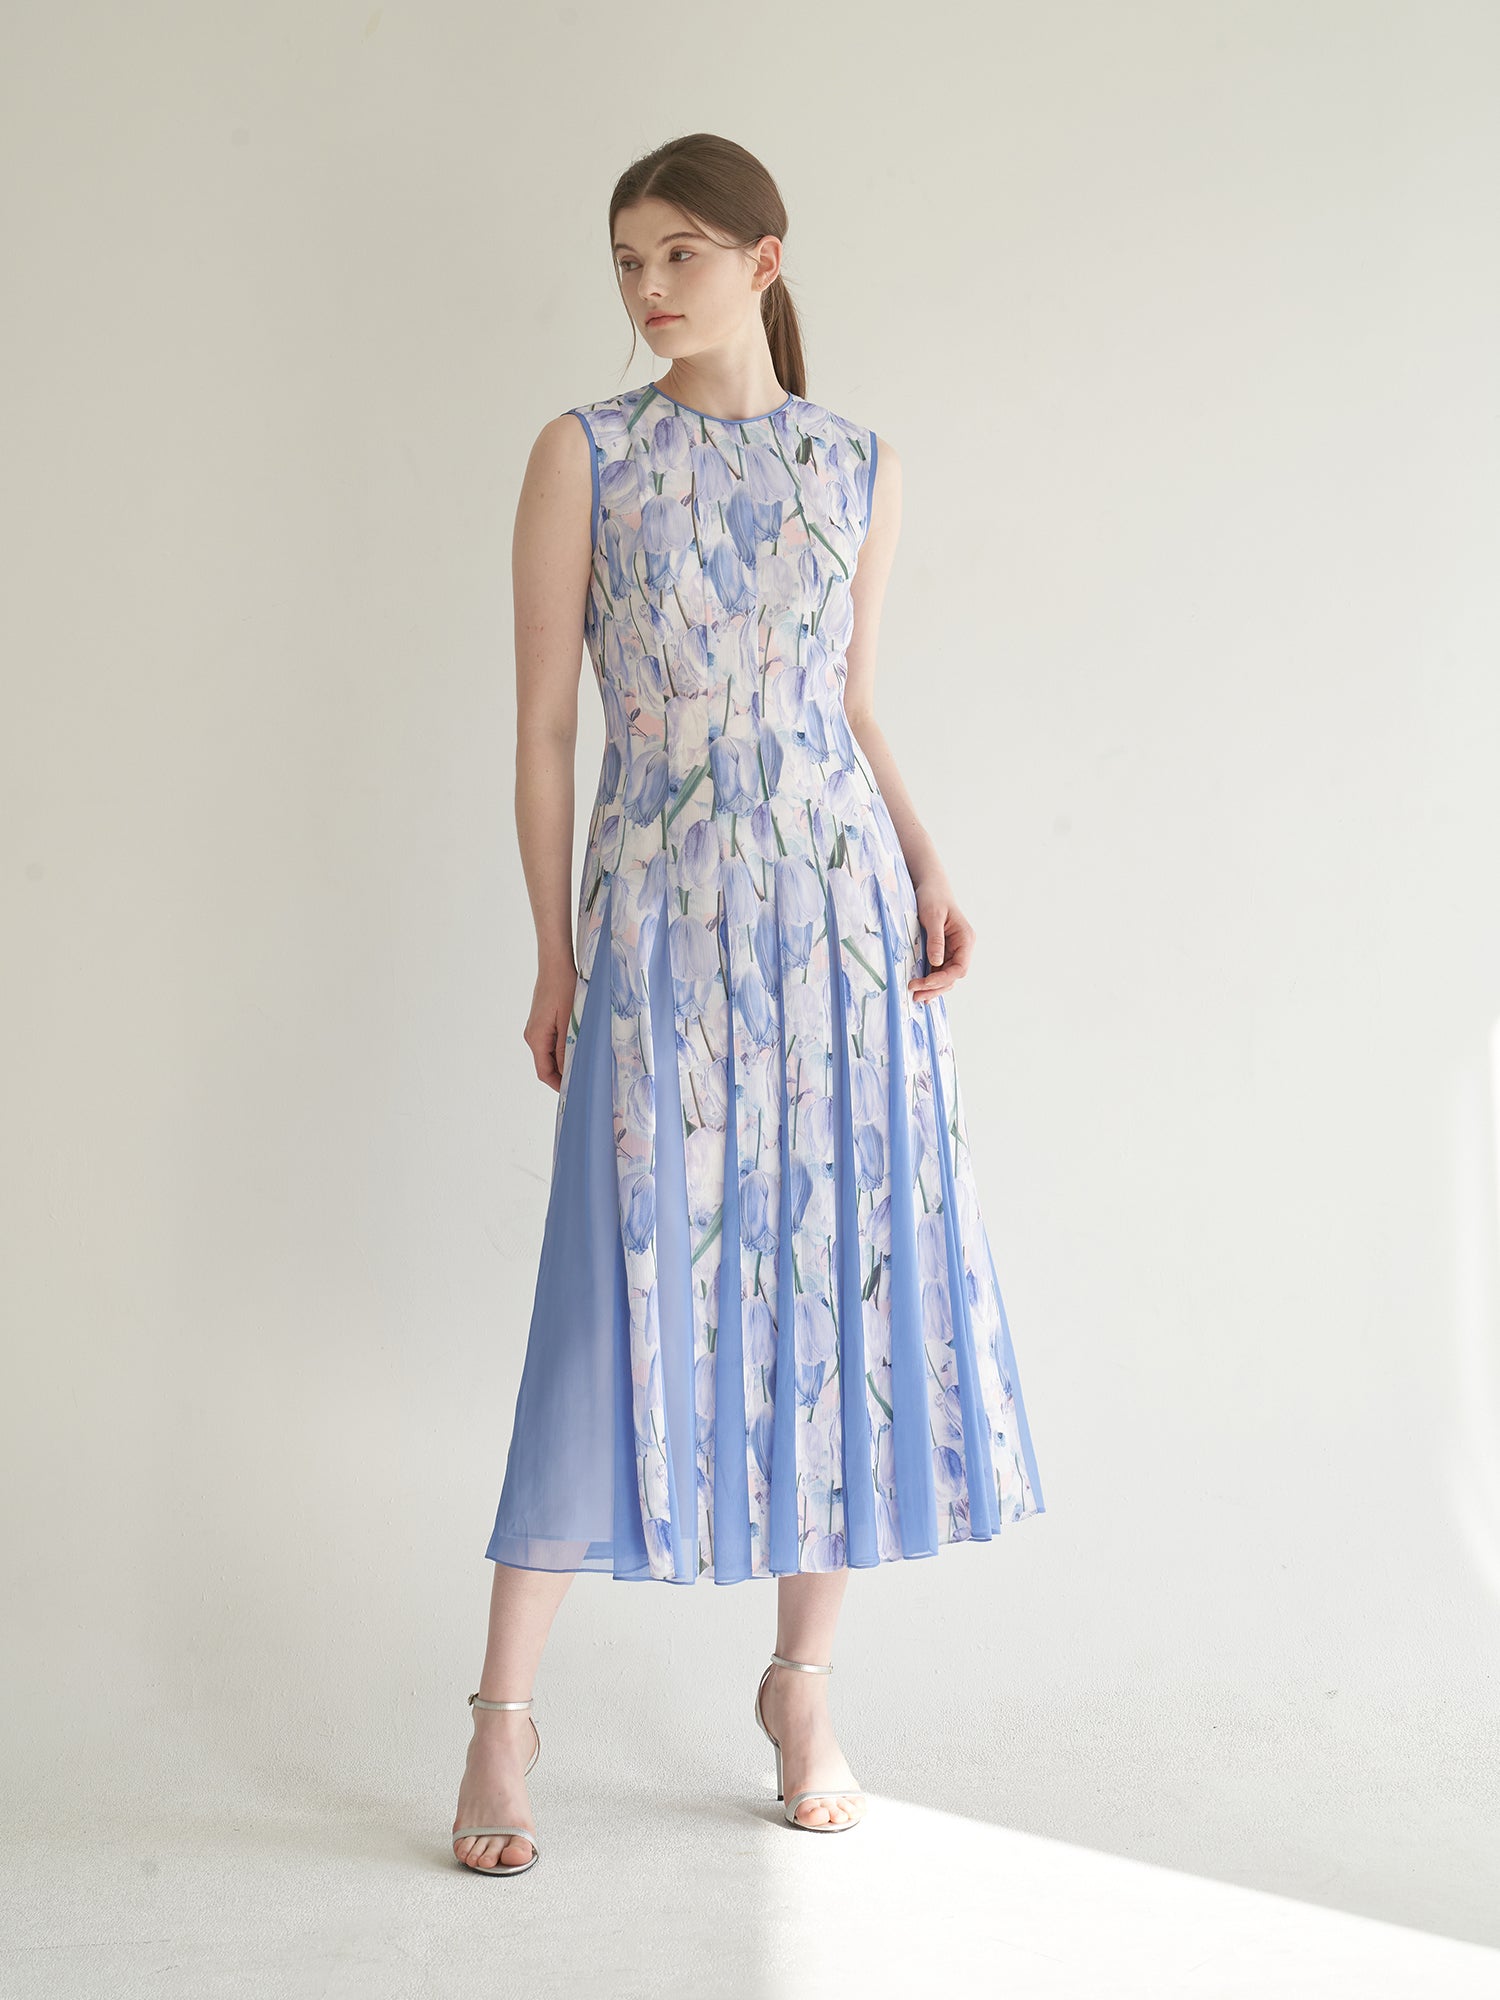 Nora Noh Watercolor Tulip Periwinkle Dress - Dresses